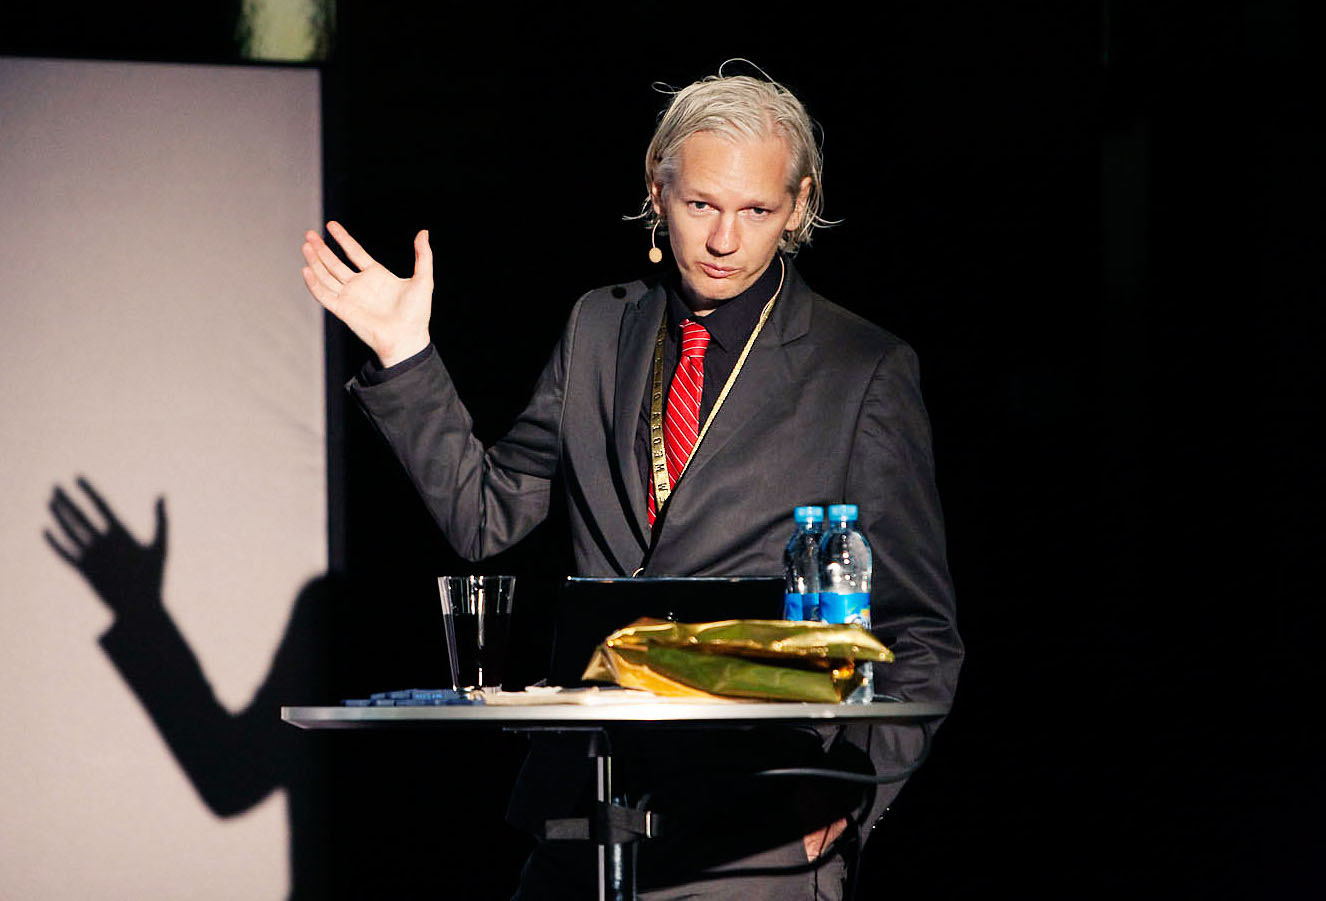 Assange at the "New Media Days 09" in Copenhagen, November 2009